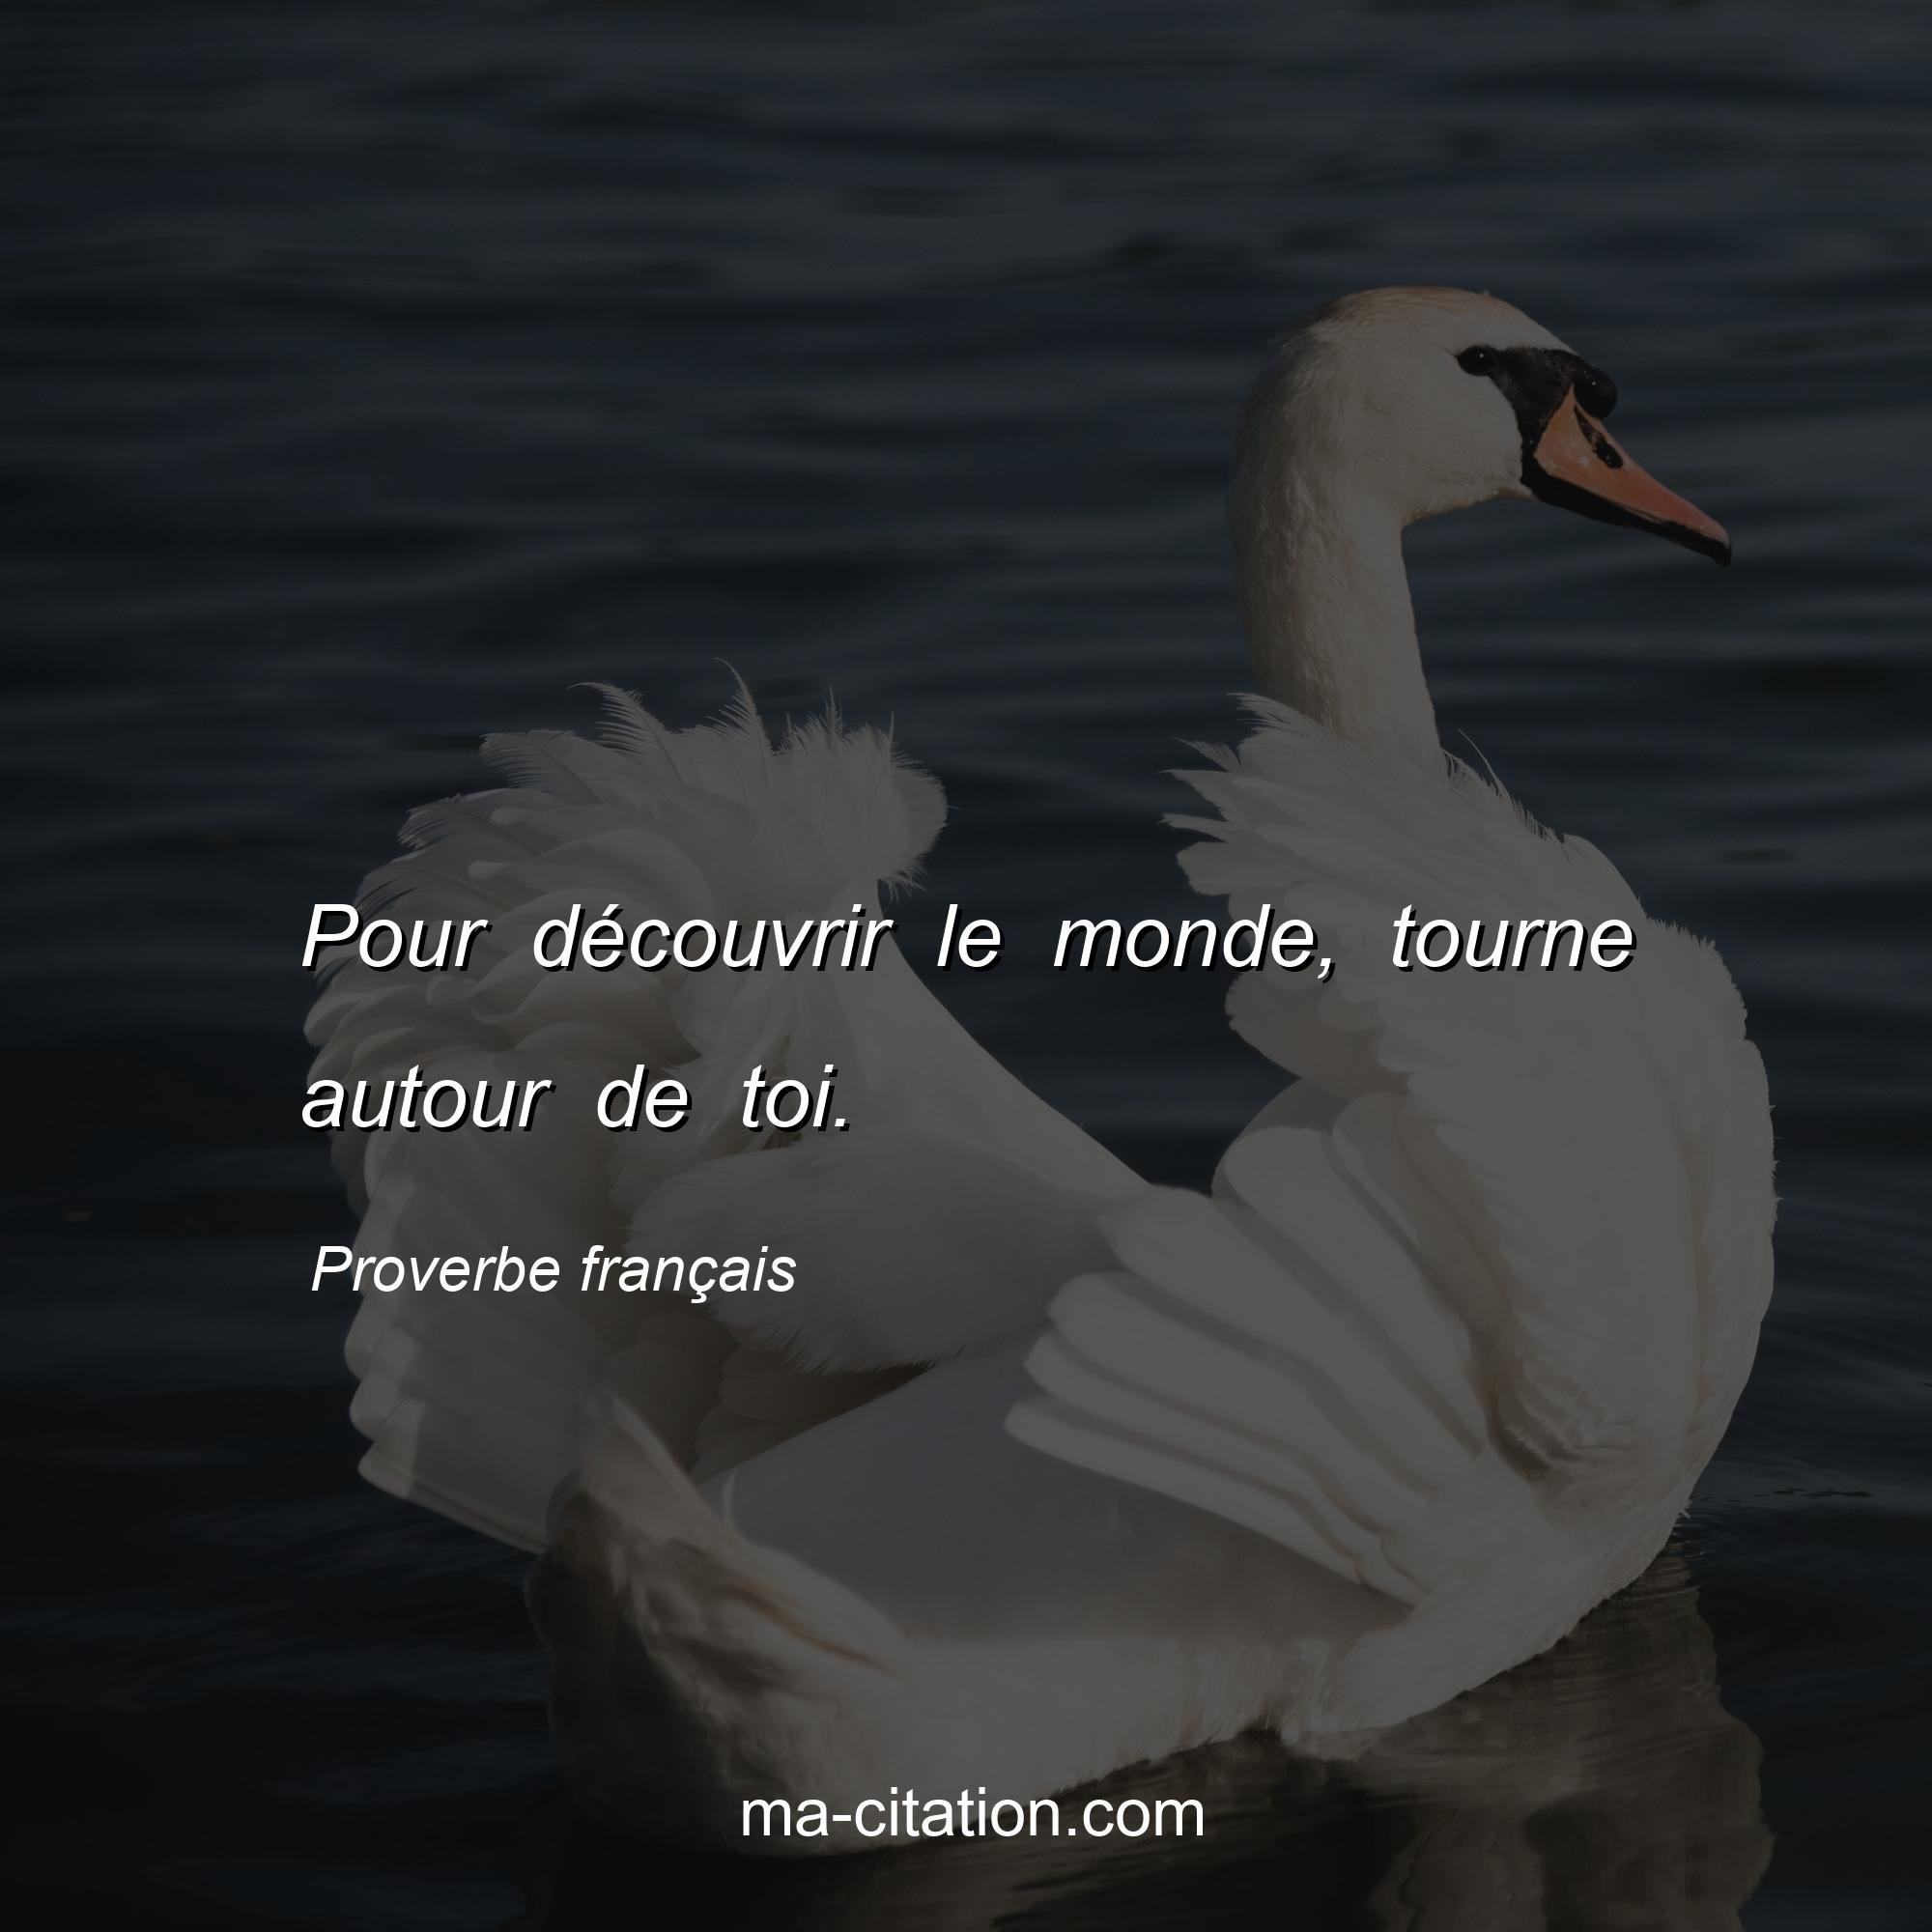 Proverbe français : Pour découvrir le monde, tourne autour de toi.